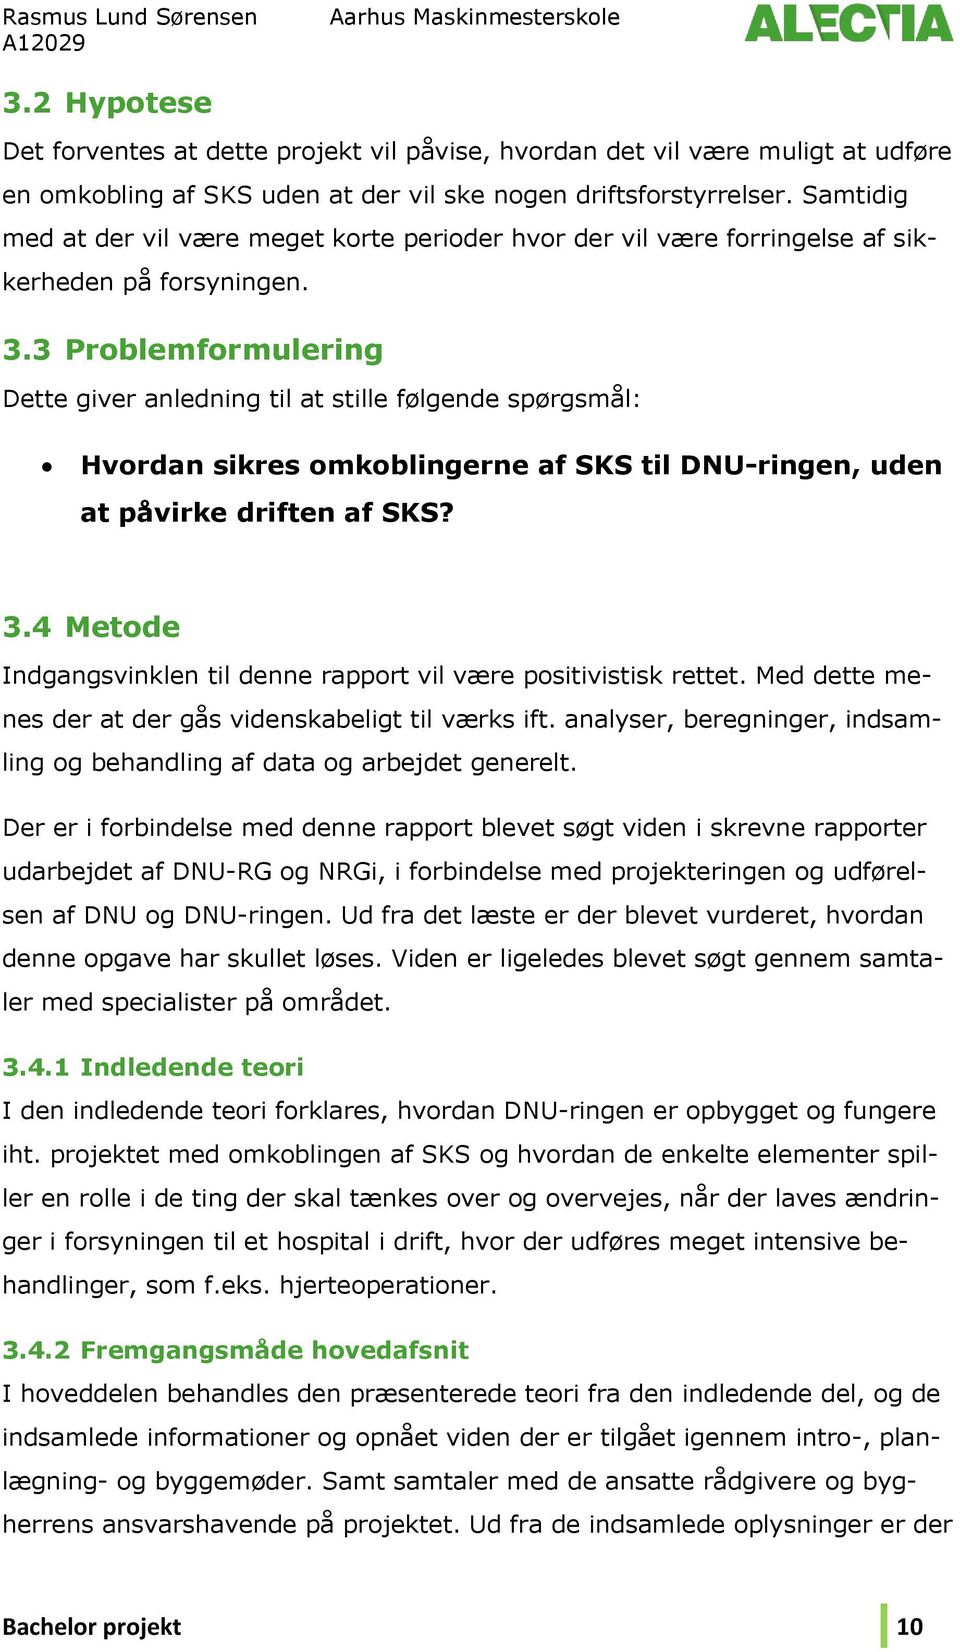 3 Problemformulering Dette giver anledning til at stille følgende spørgsmål: Hvordan sikres omkoblingerne af SKS til DNU-ringen, uden at påvirke driften af SKS? 3.